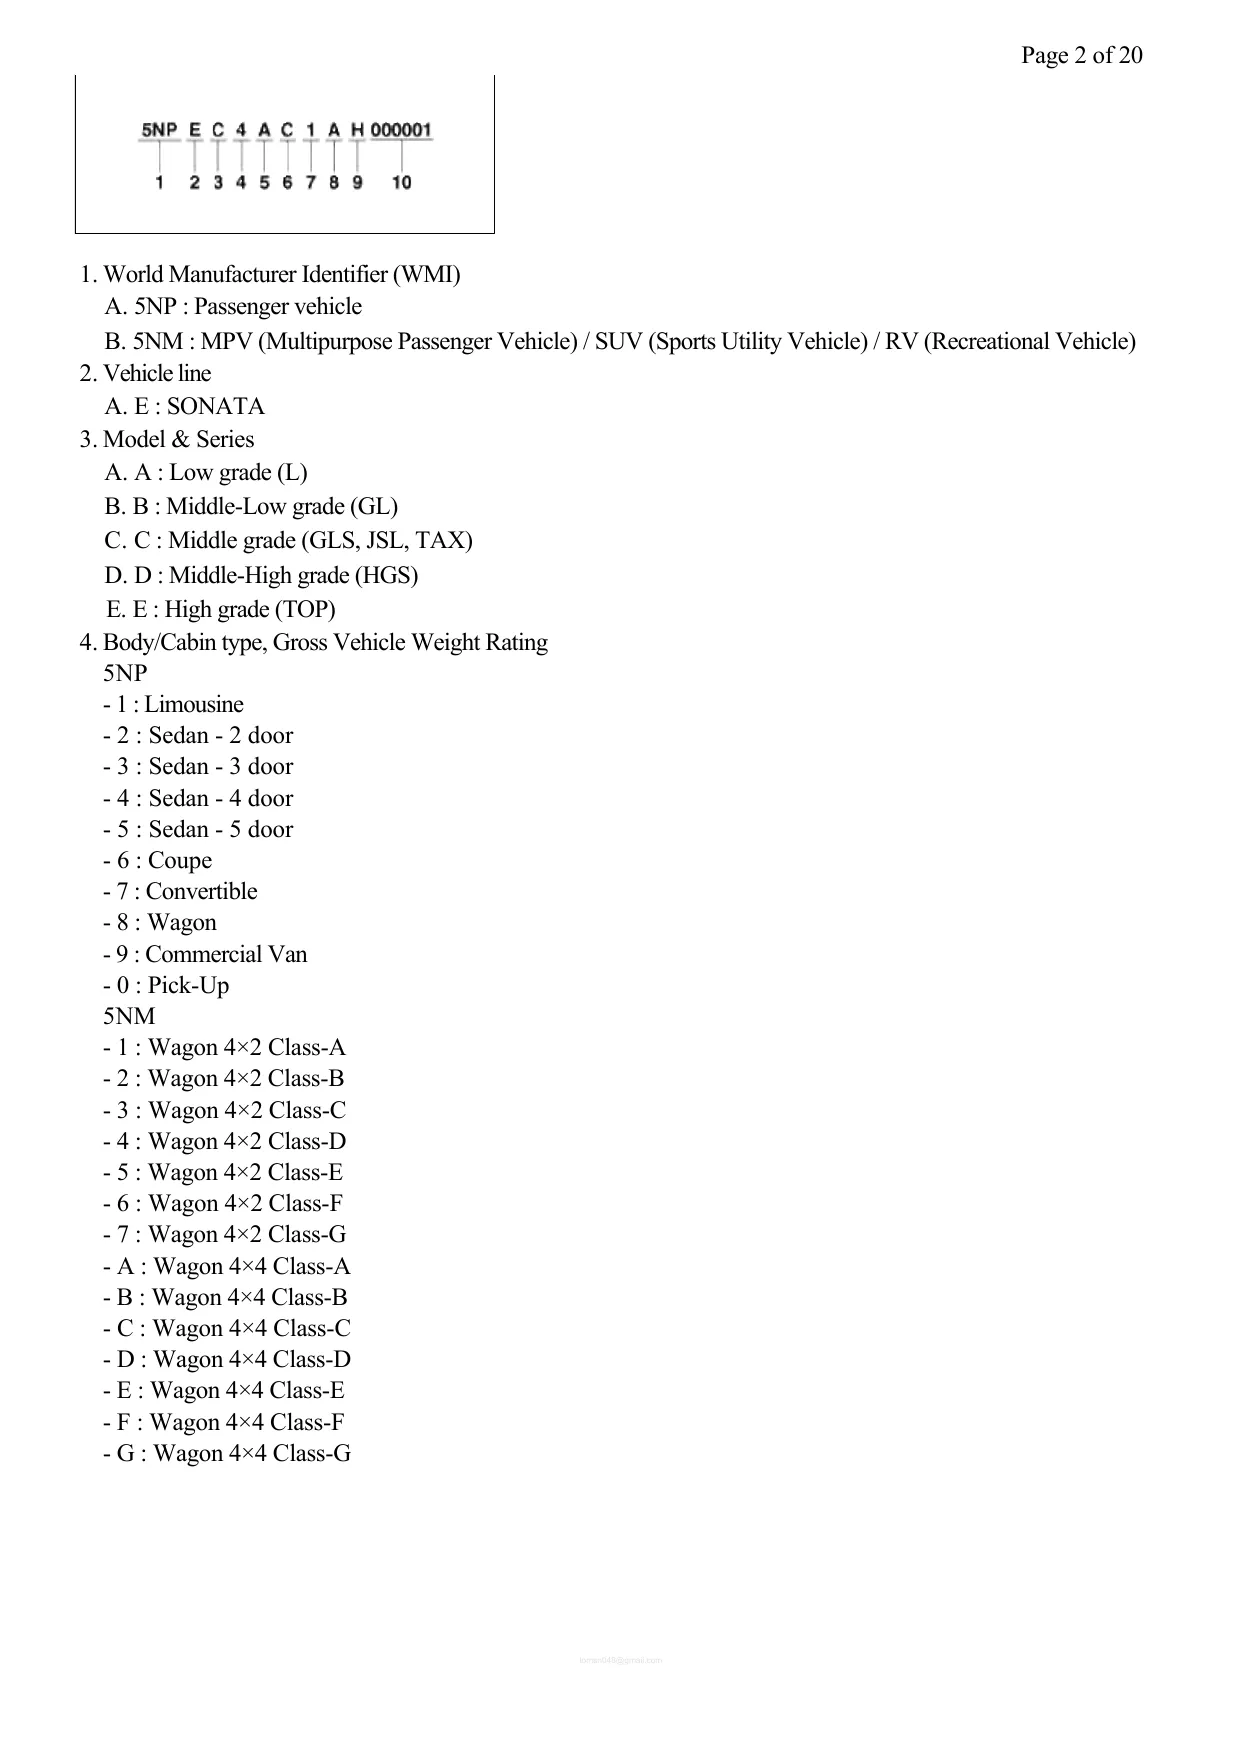 2012-2014 Hyundai Sonata manual Preview image 2